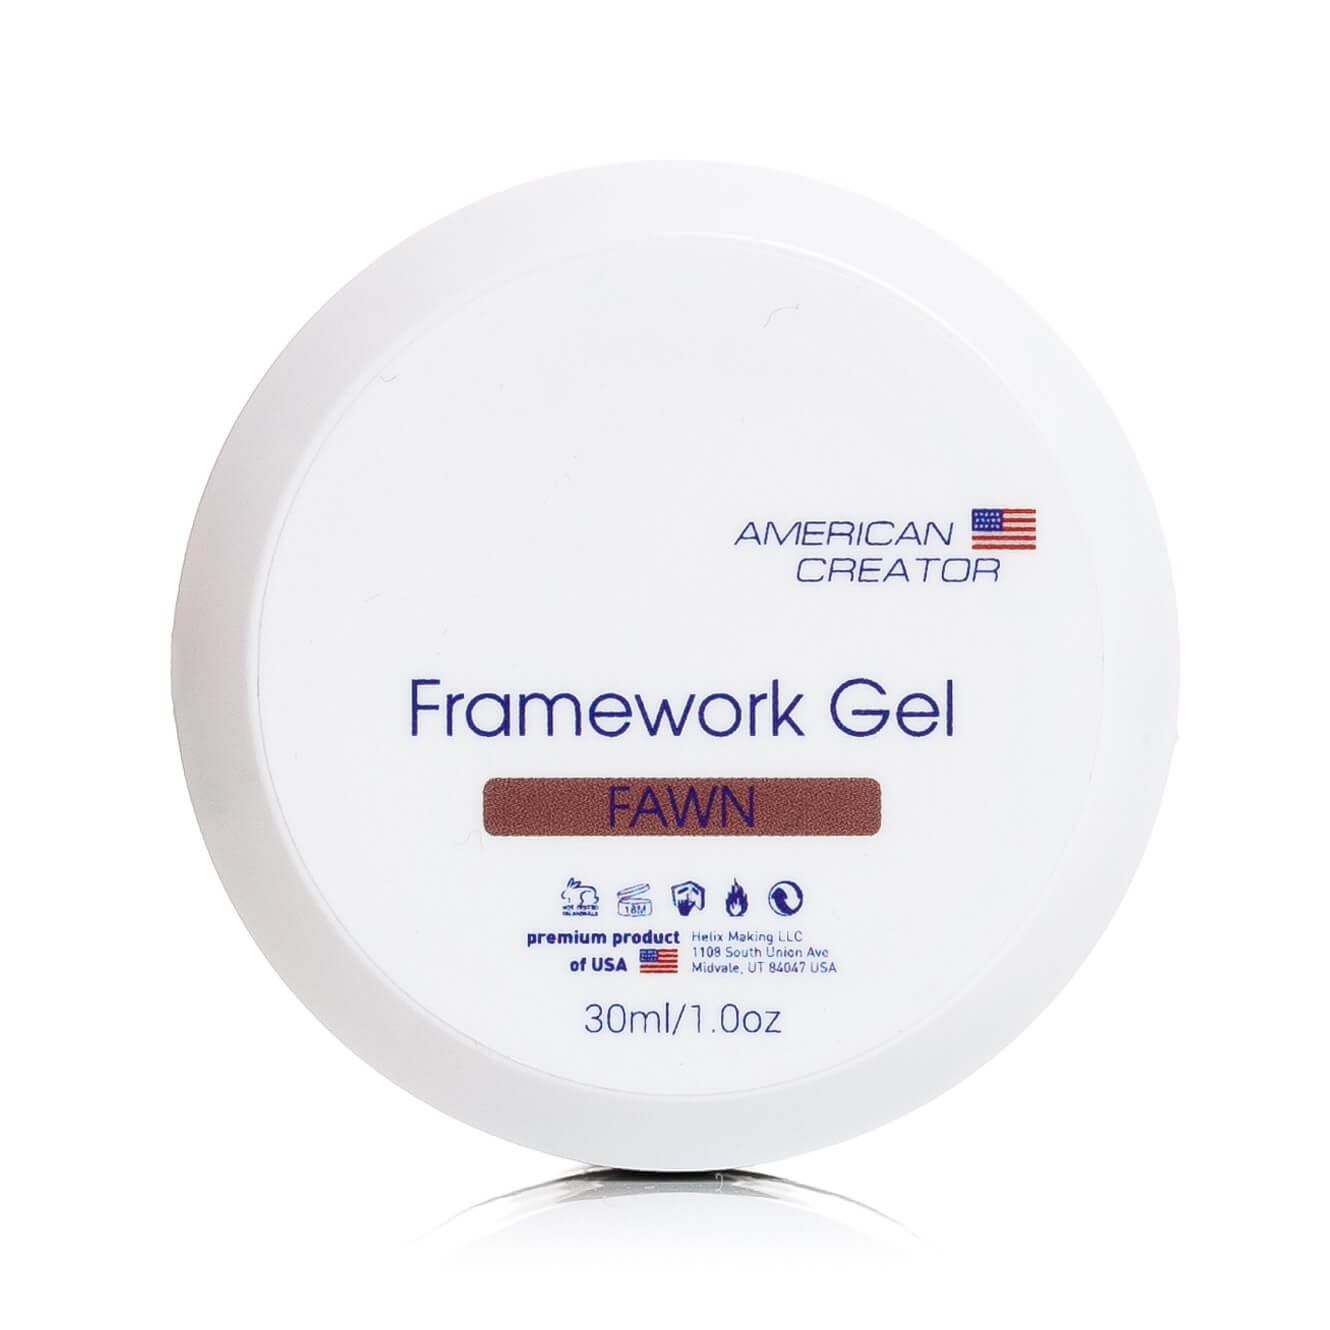 American Creator Framework Gel - Fawn